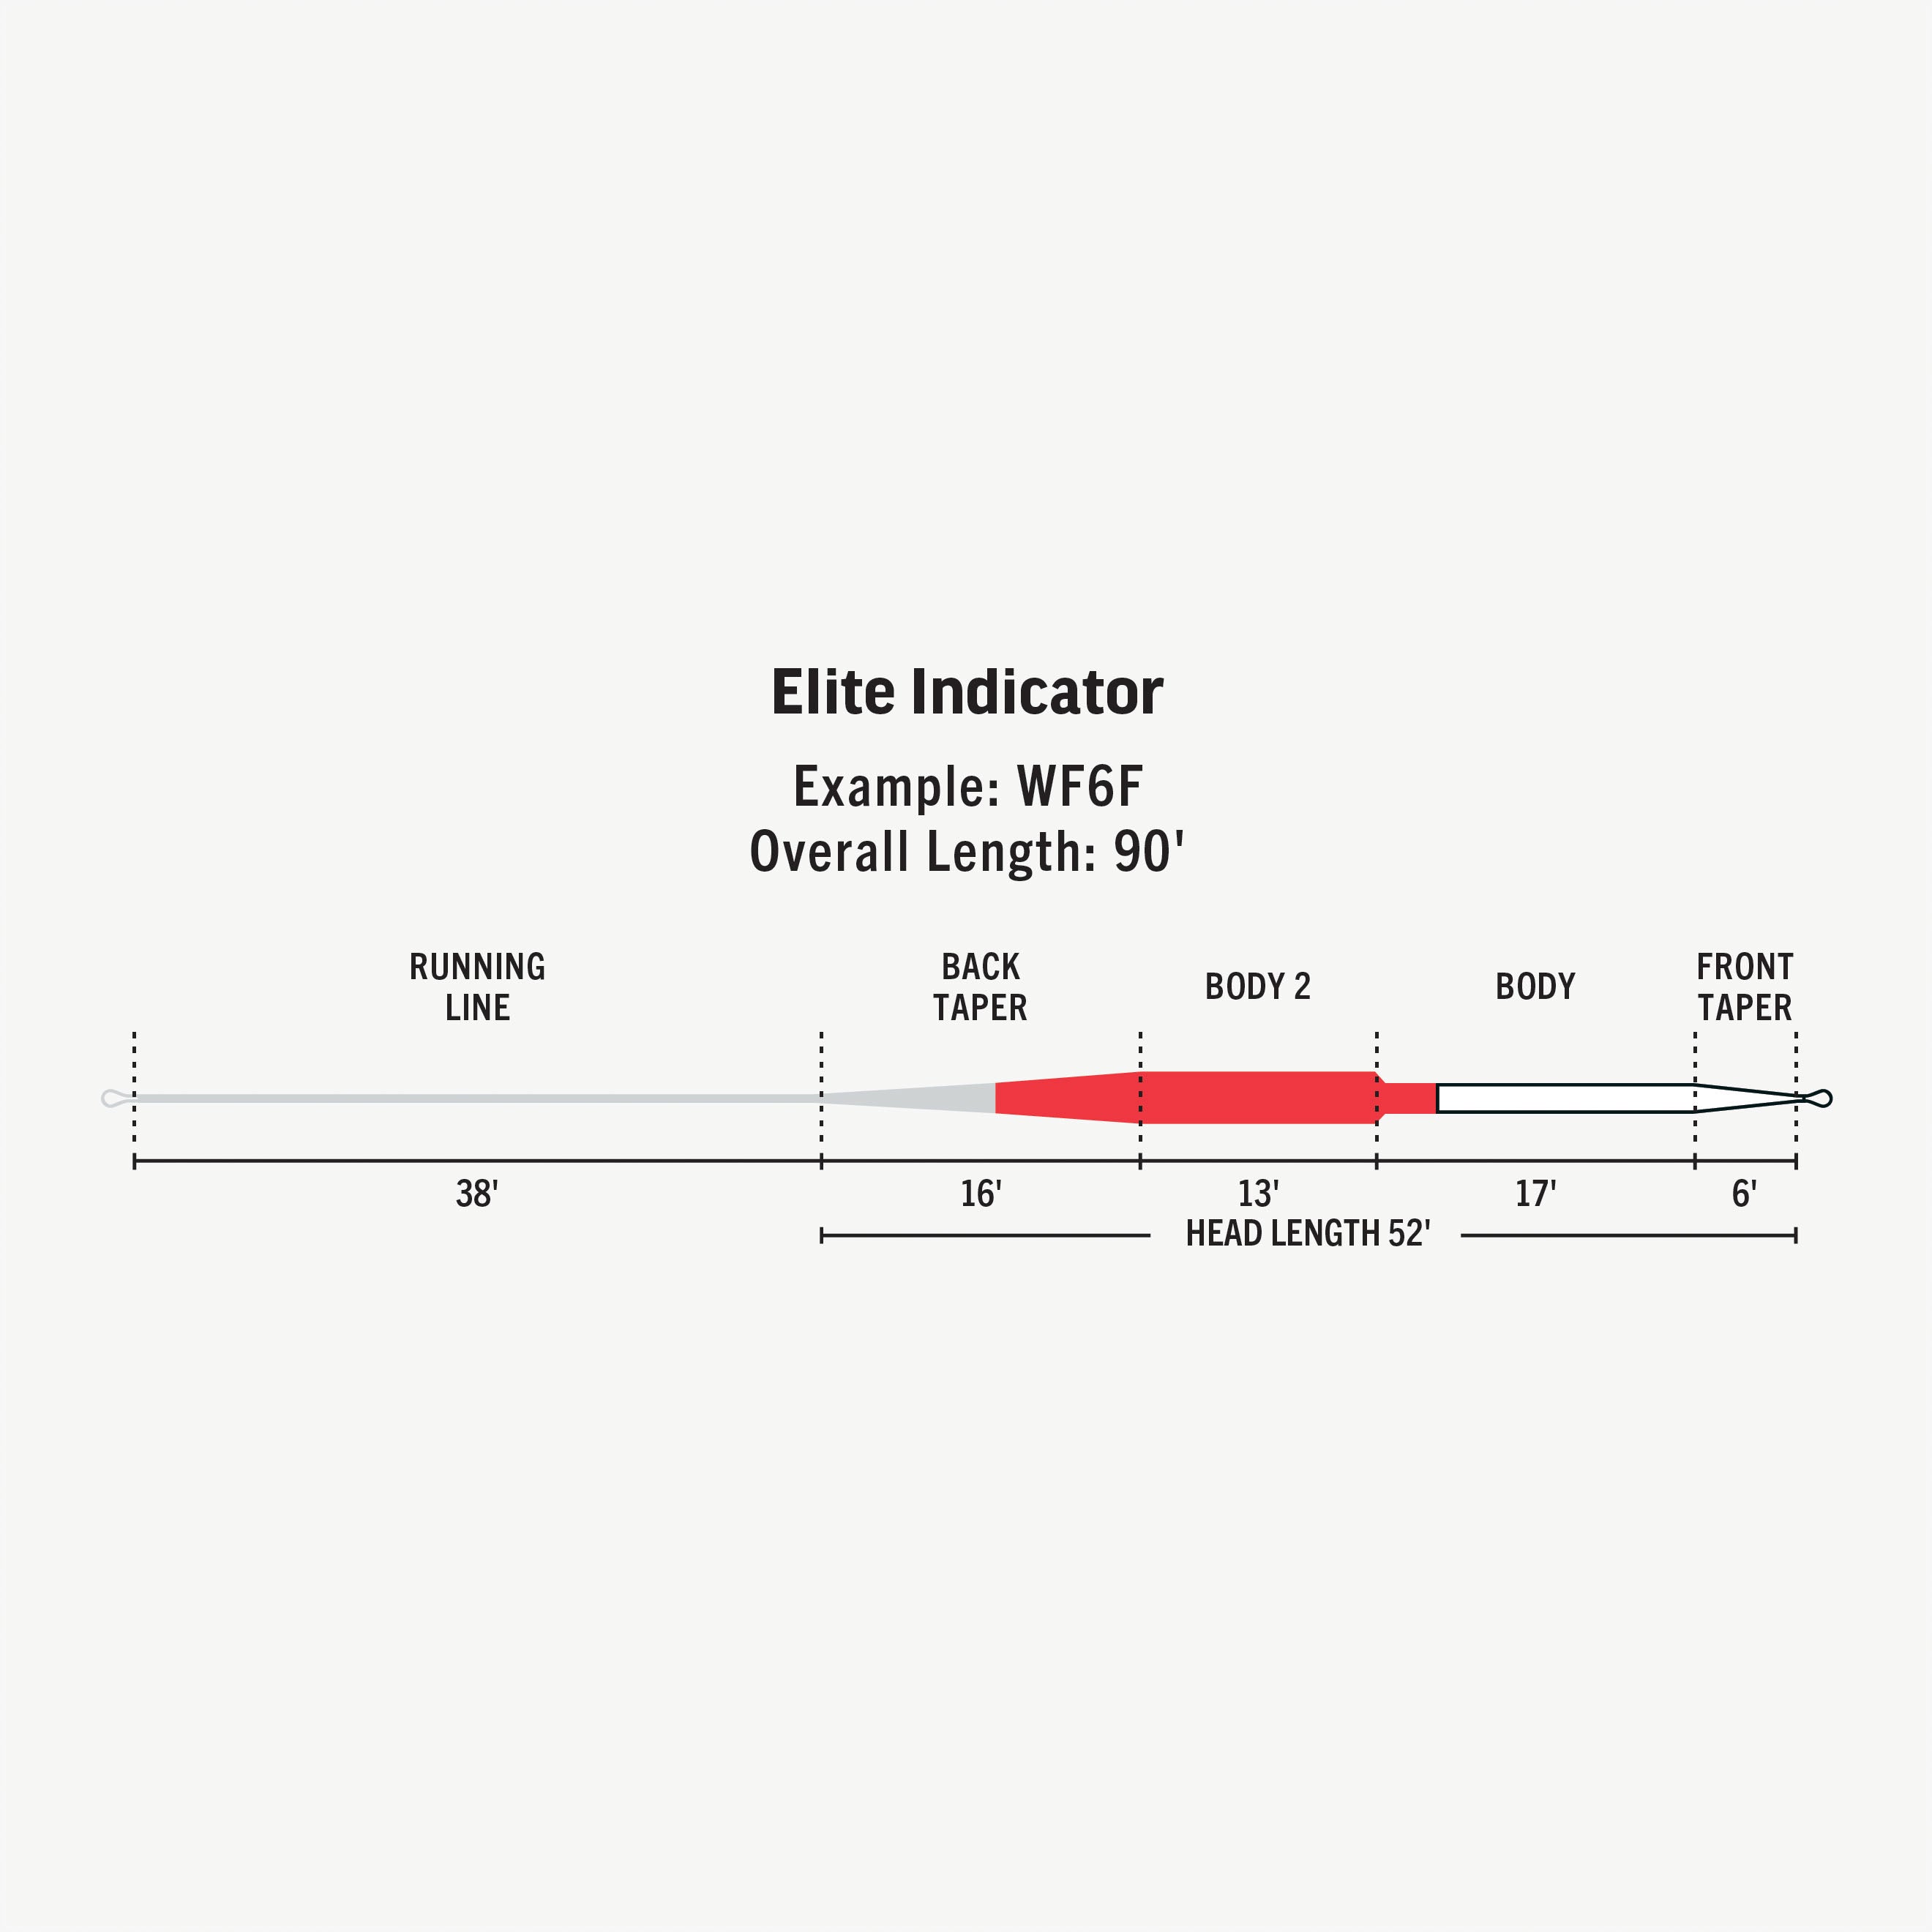 Elite Indicator